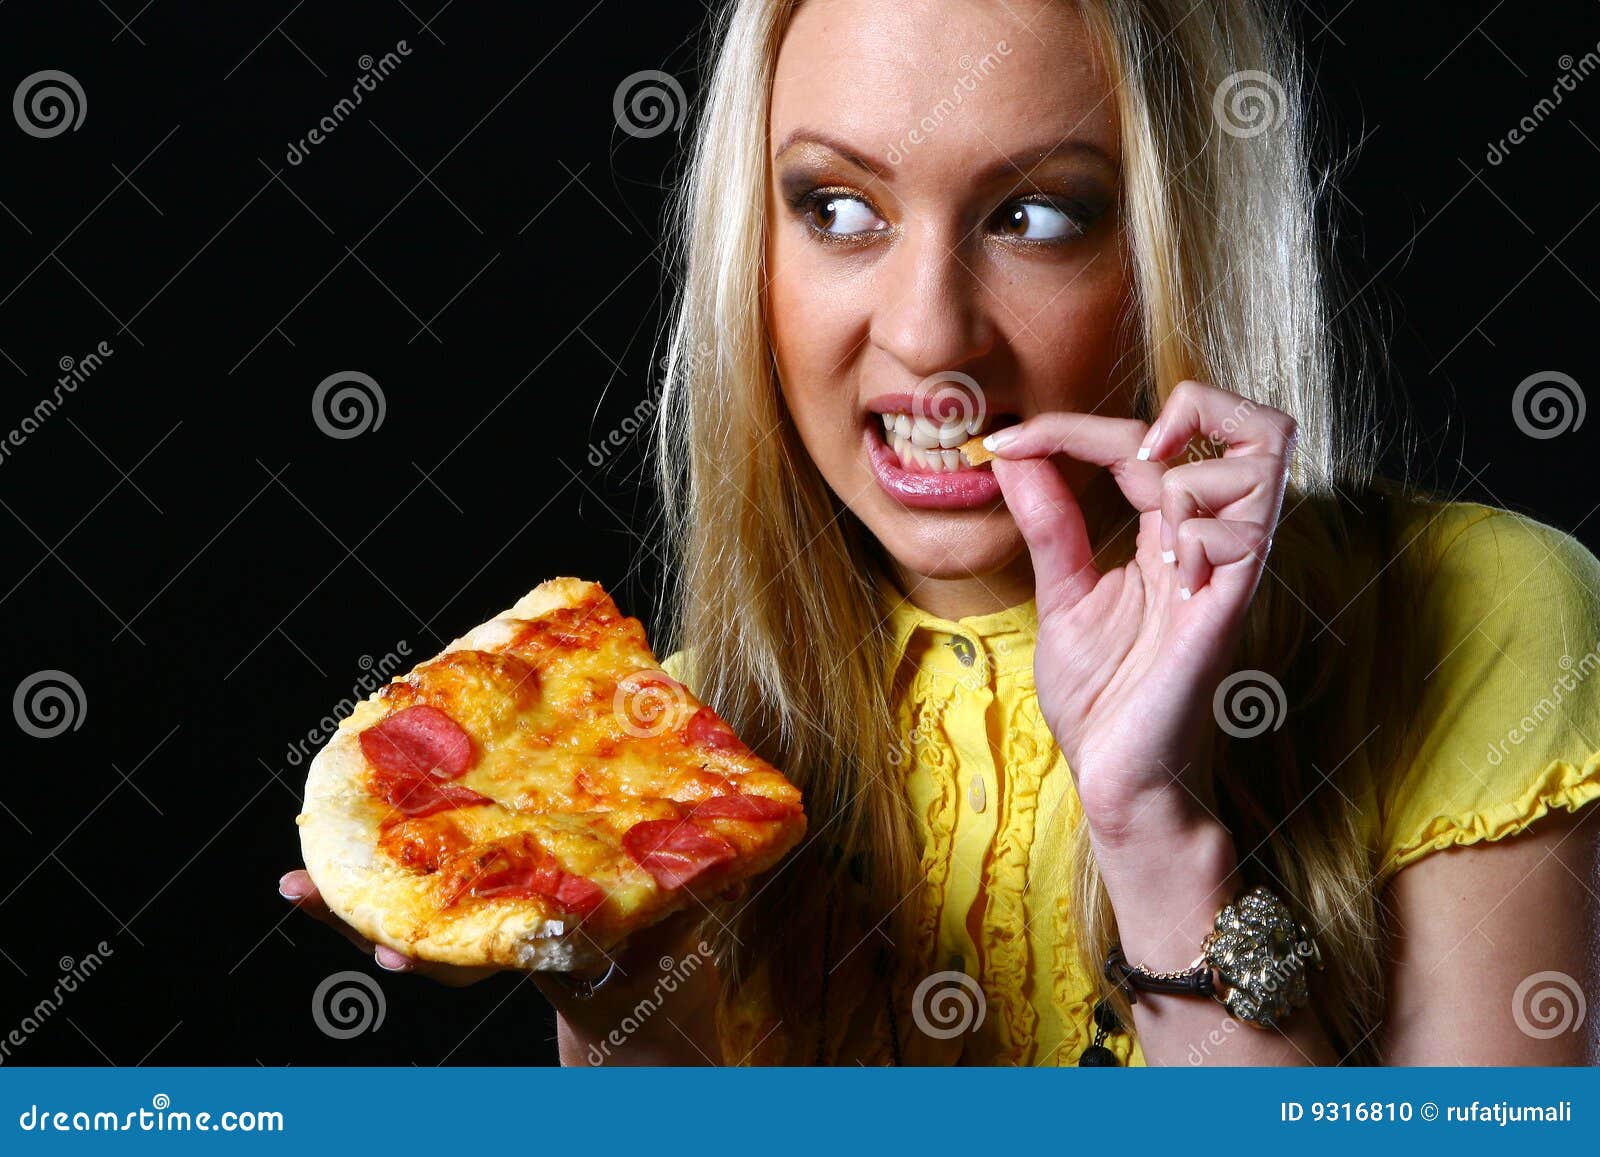 фотошоп девушка из куска пиццы фото 10